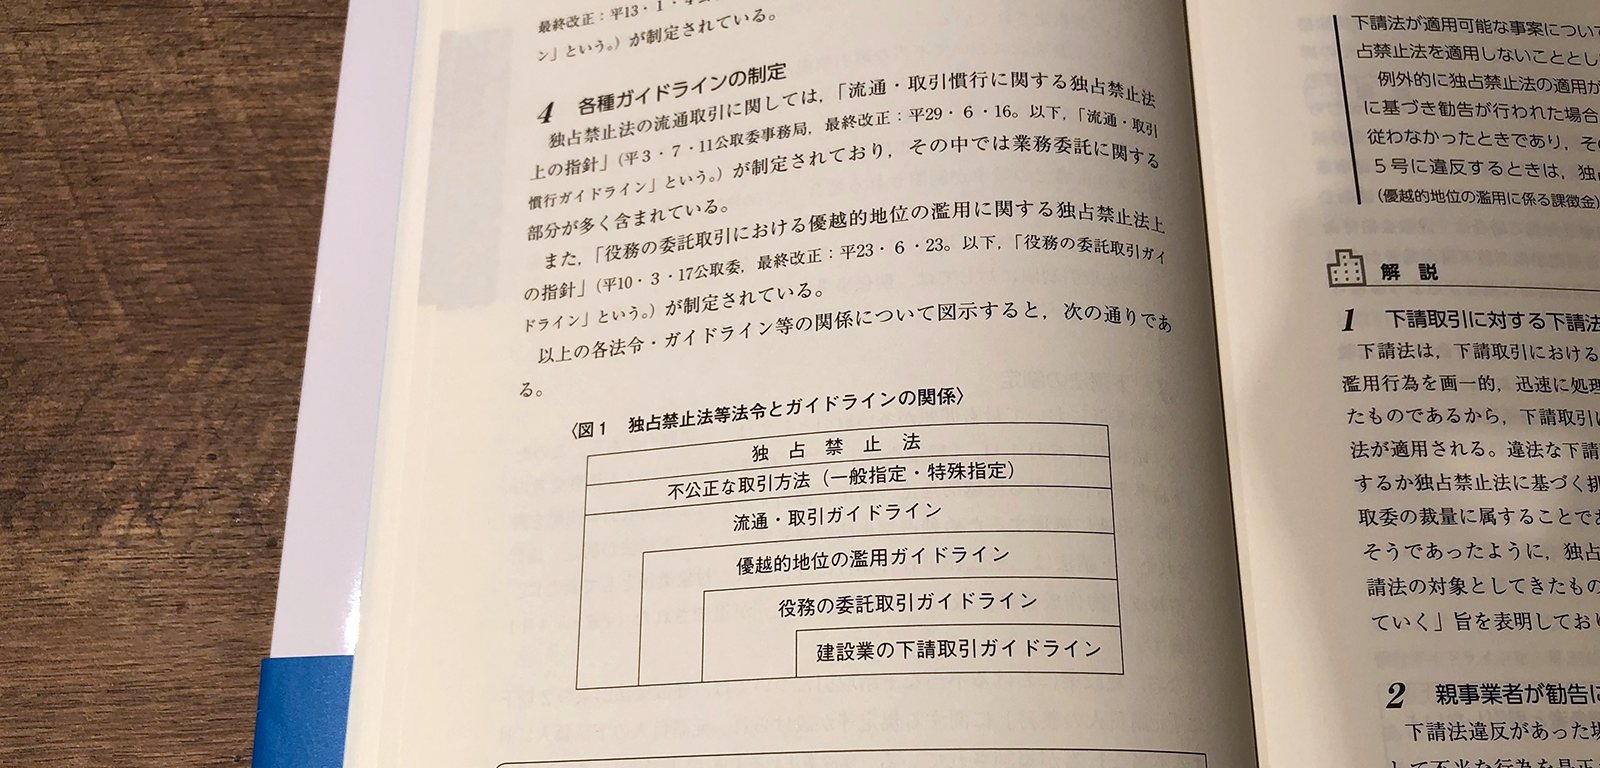 波光巖・横田直和『Q&A 業務委託・企業間取引における法律と実務』P4